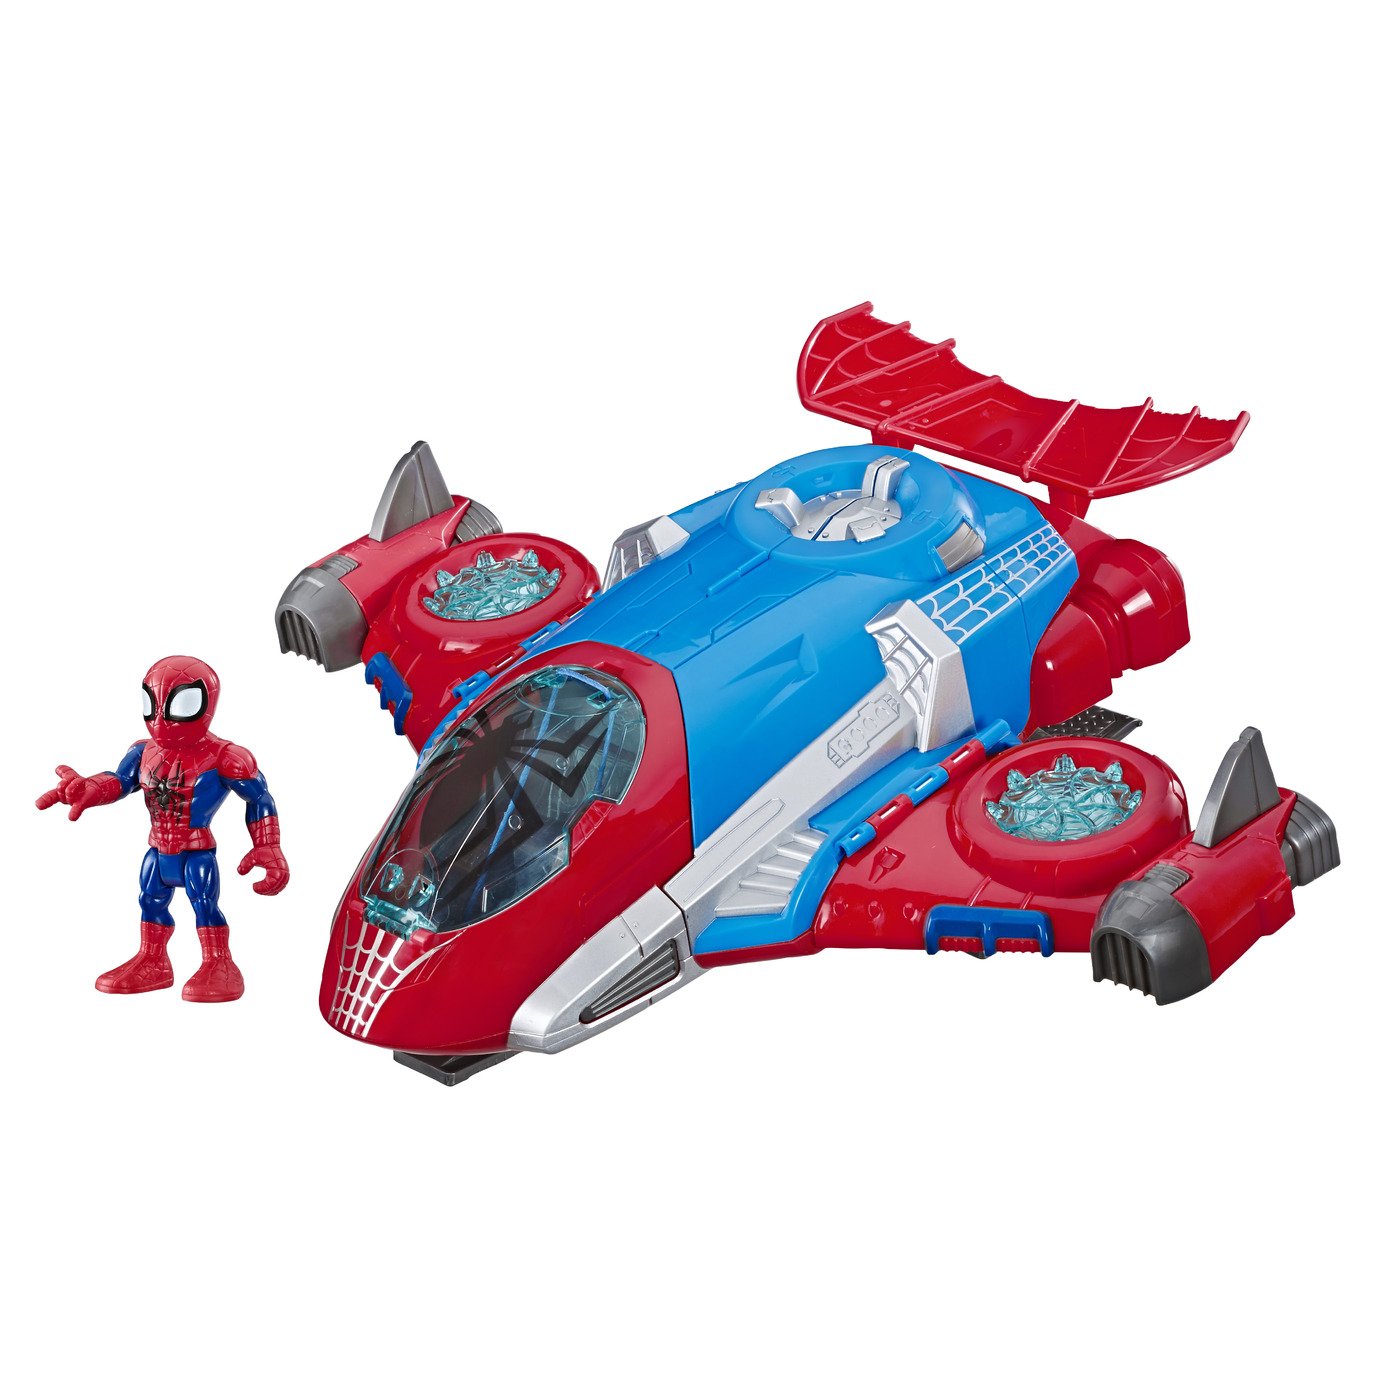 spider man spaceship toy